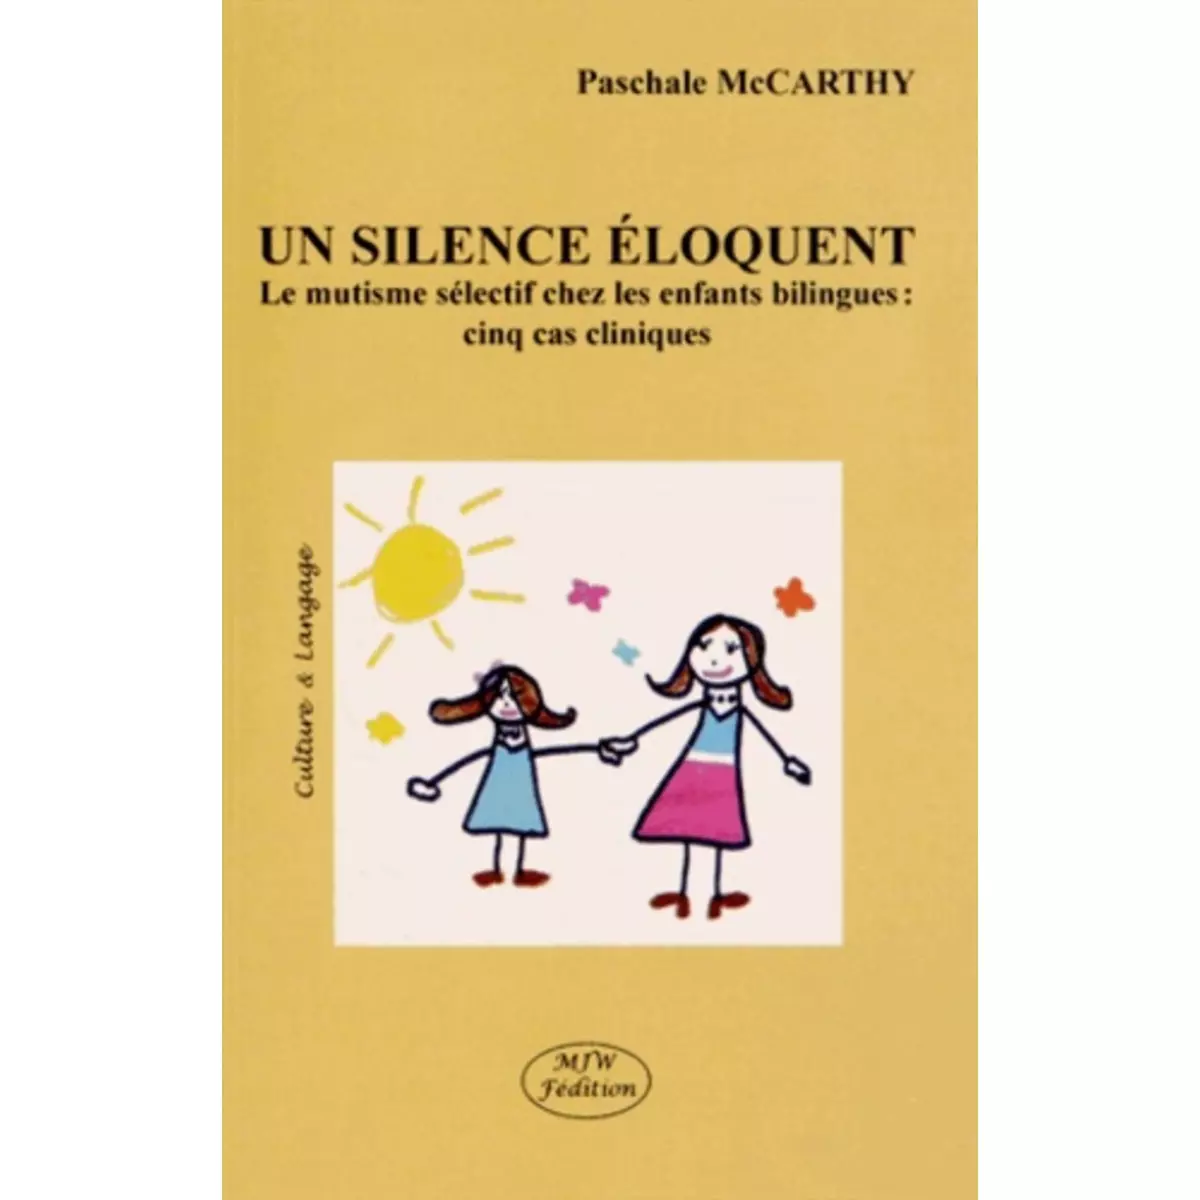  UN SILENCE ELOQUENT. LE MUTISME SELECTIF CHEZ LES ENFANTS BILINGUES : CINQ CAS CLINIQUES, McCarthy Paschale